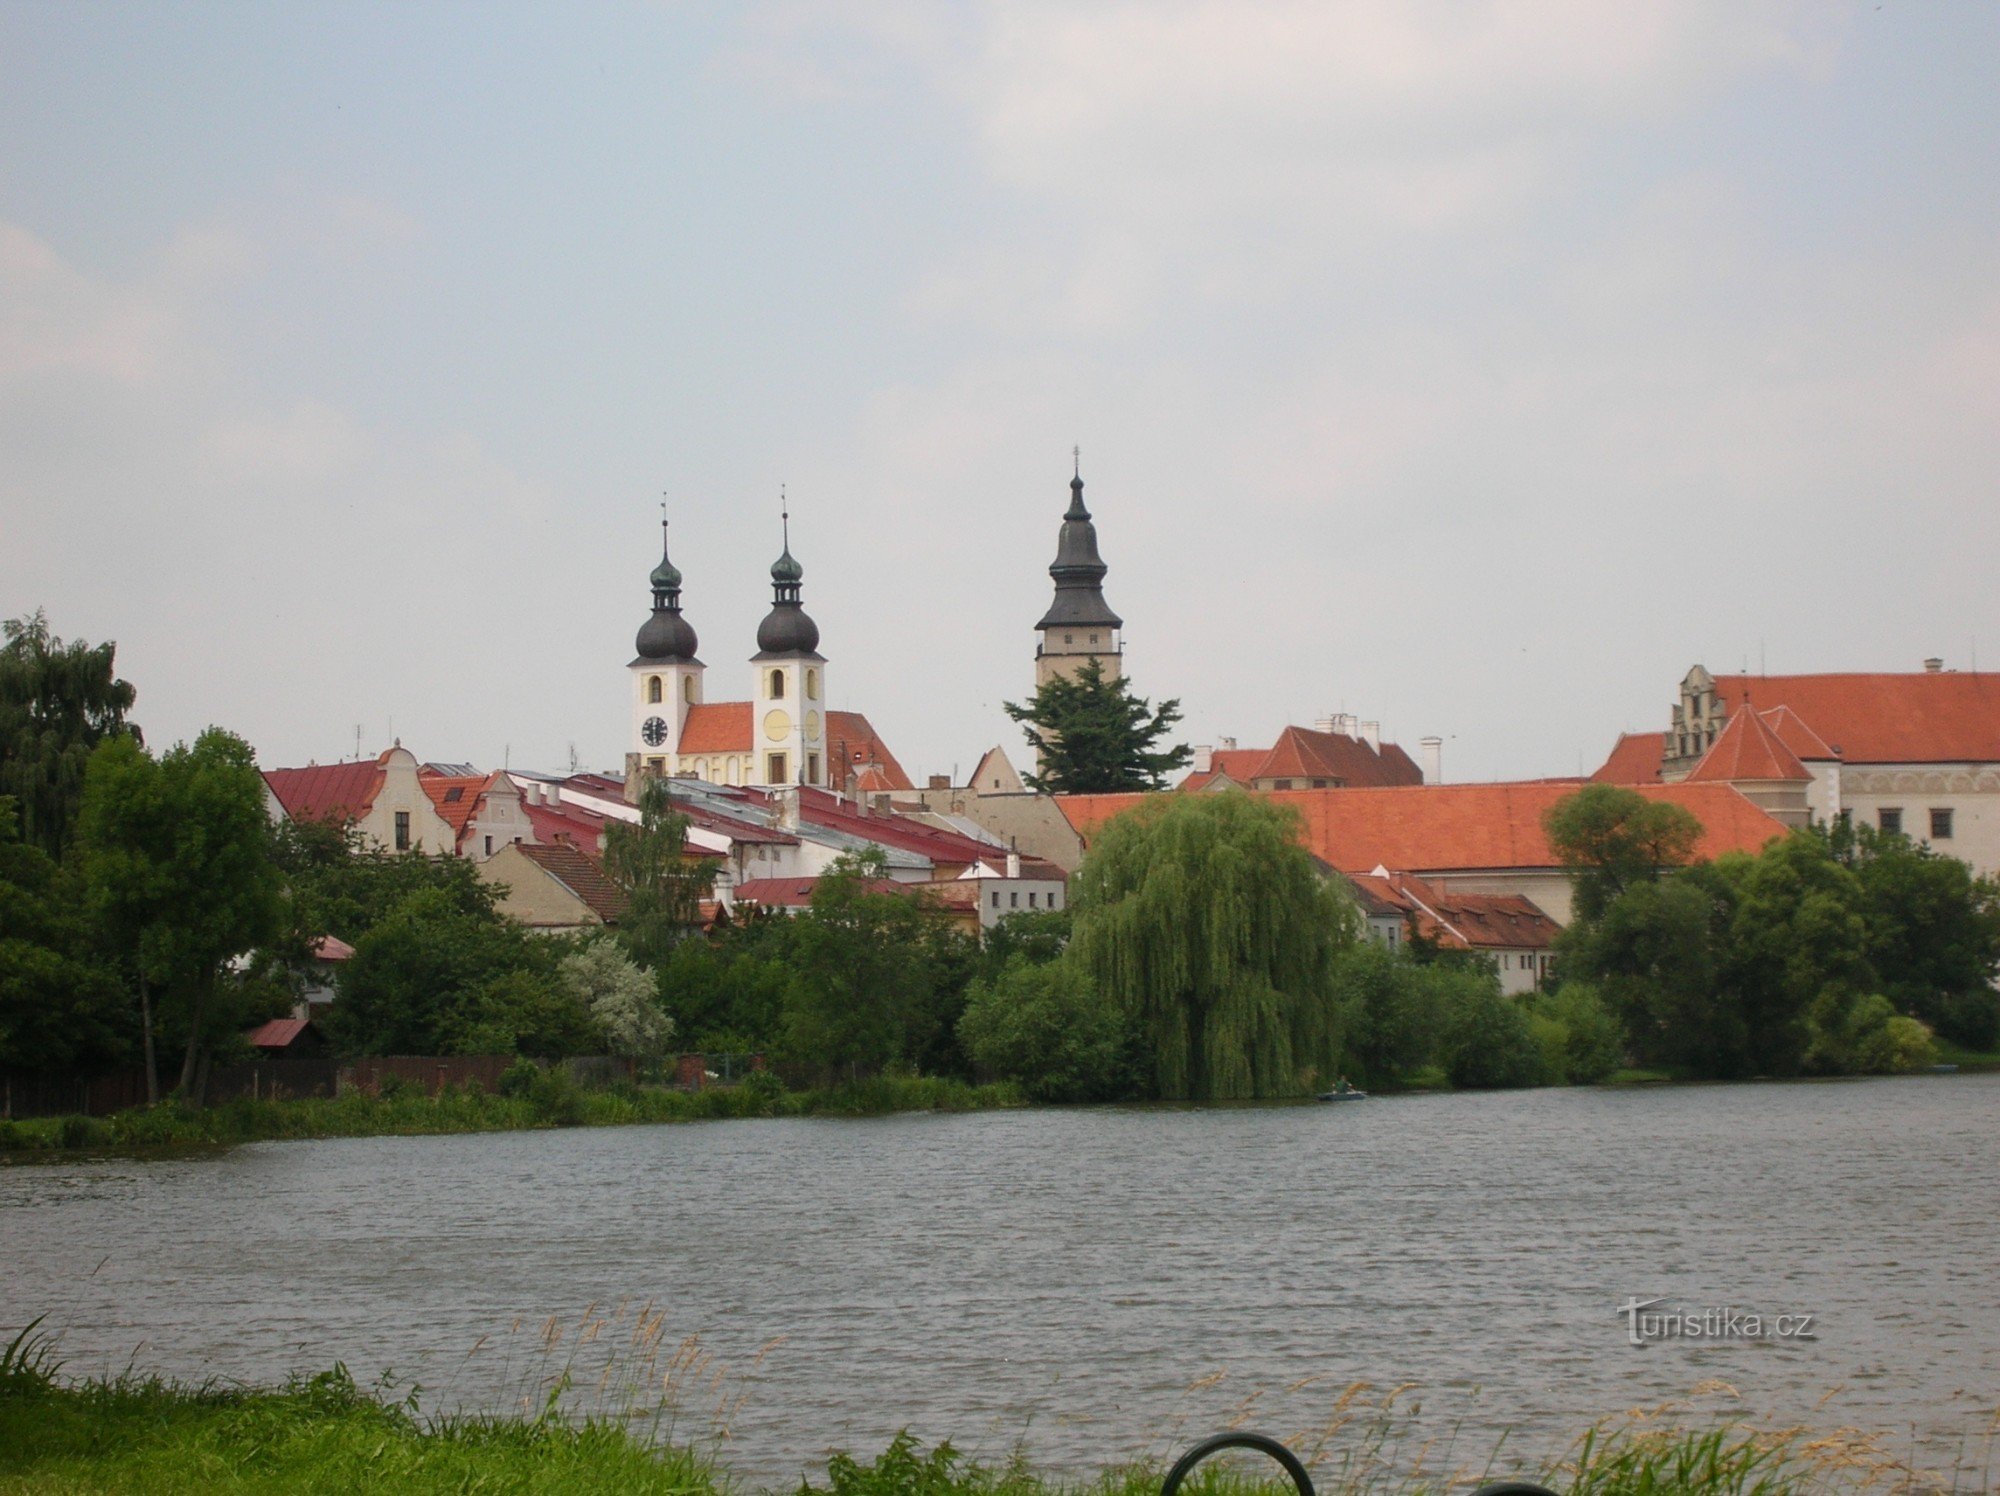 Widok na miasto Telč